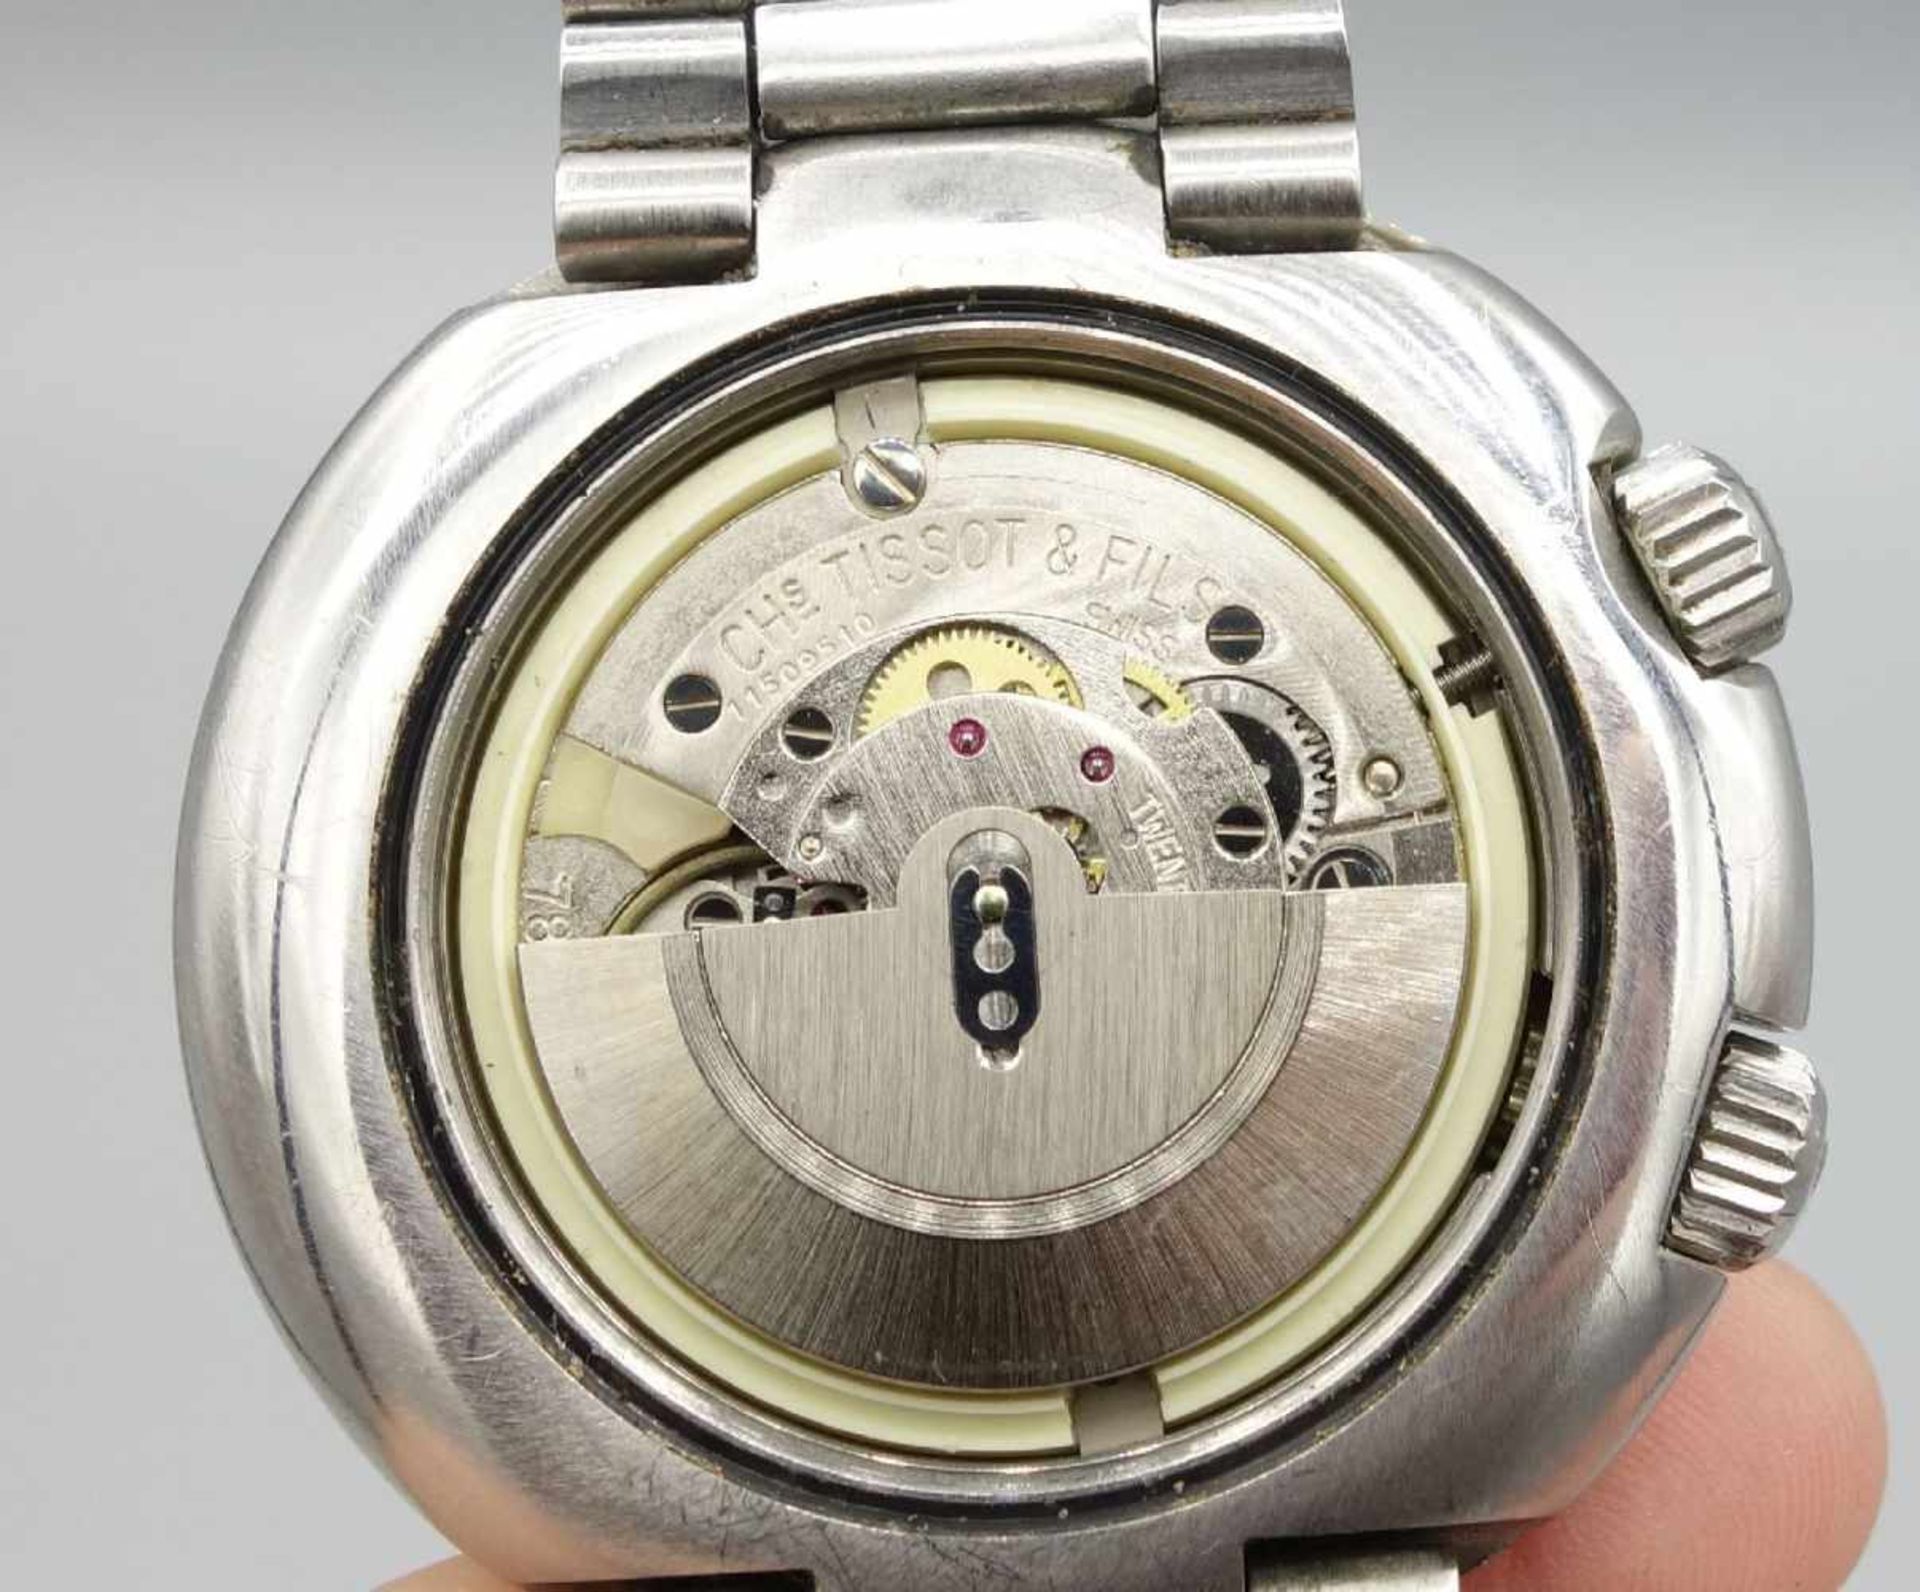 VINTAGE ARMBANDUHR: TISSOT NAVIGATOR T12 / wristwatch, 1970er Jahre, Manufaktur Tissot / Schweiz, - Image 8 of 8